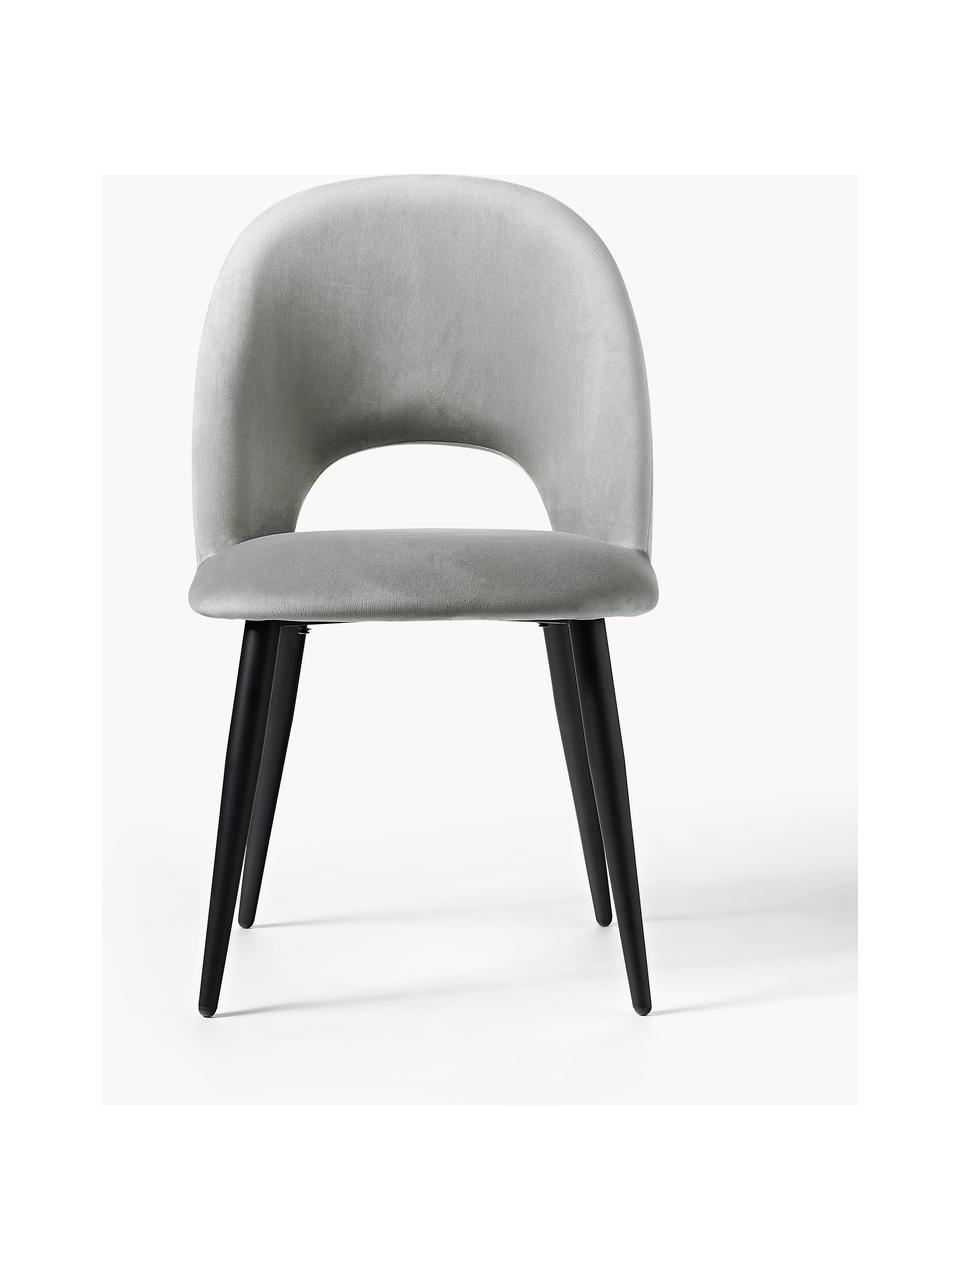 Krzesło tapicerowane z aksamitu Rachel, Tapicerka: aksamit (100% poliester) , Nogi: metal malowany proszkowo, Jasnoszary aksamit, S 53 x G 57 cm